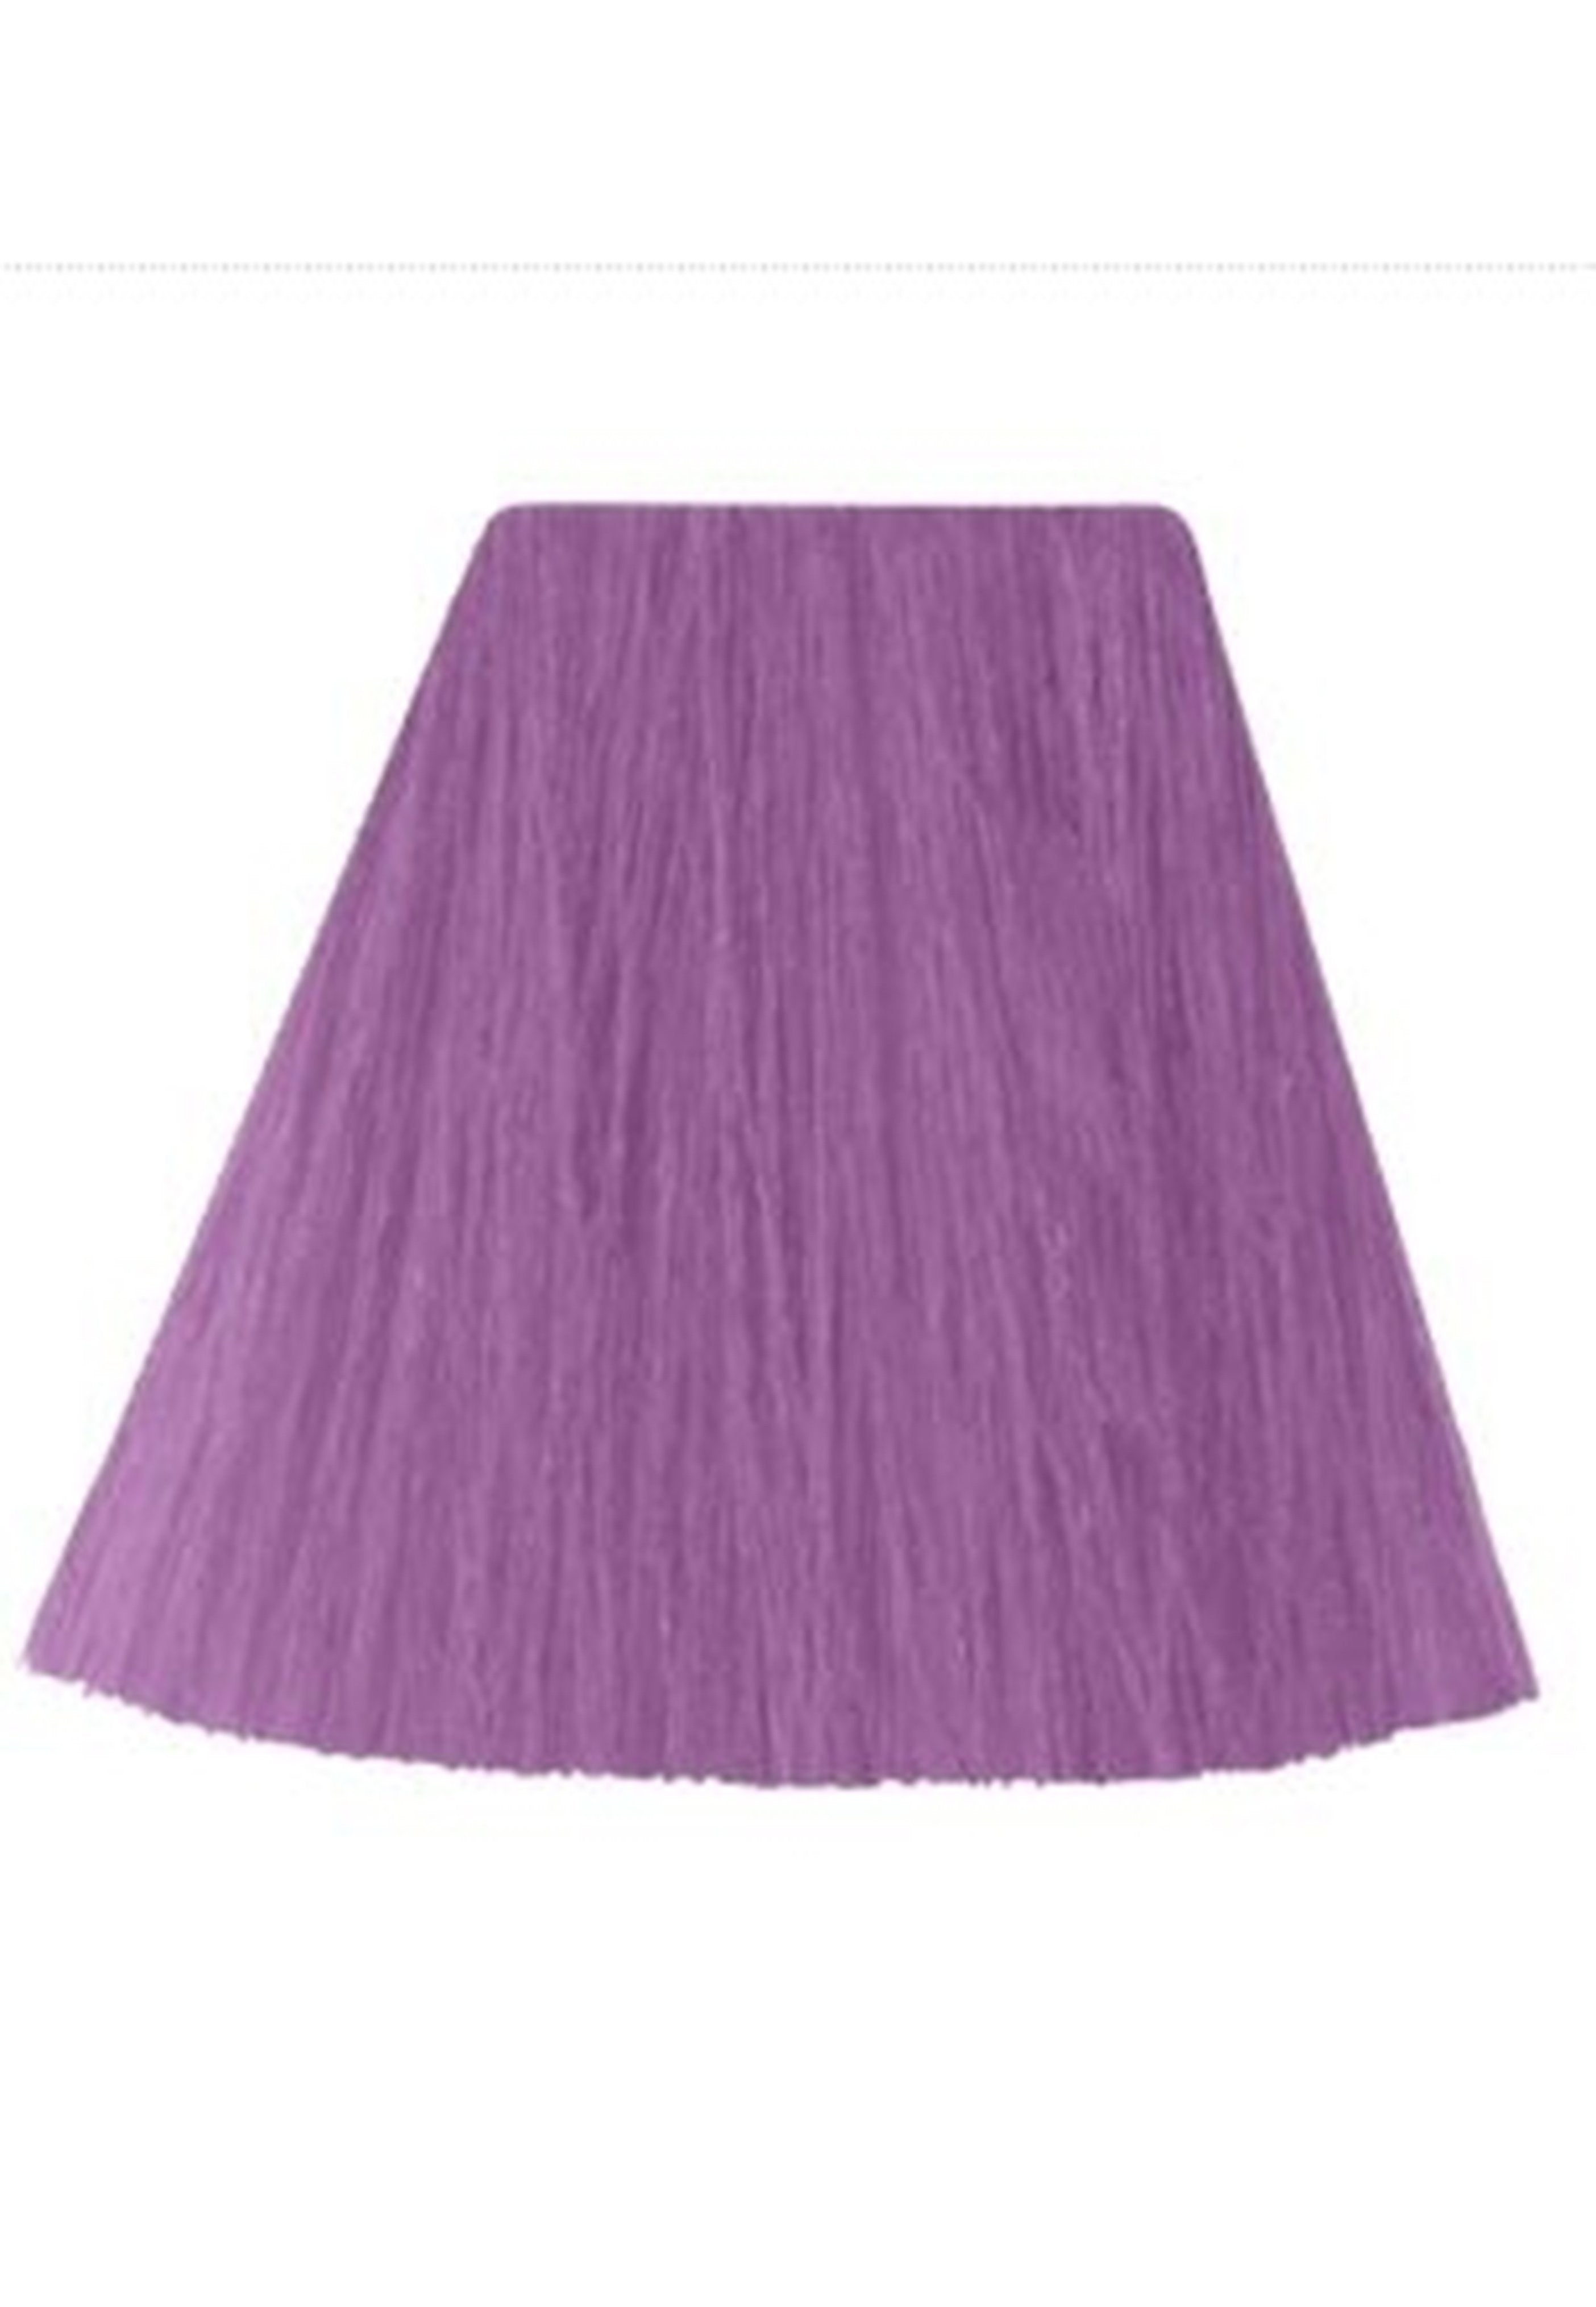 Manic Panic - Creamtones Velvet Violet - Hair Dye